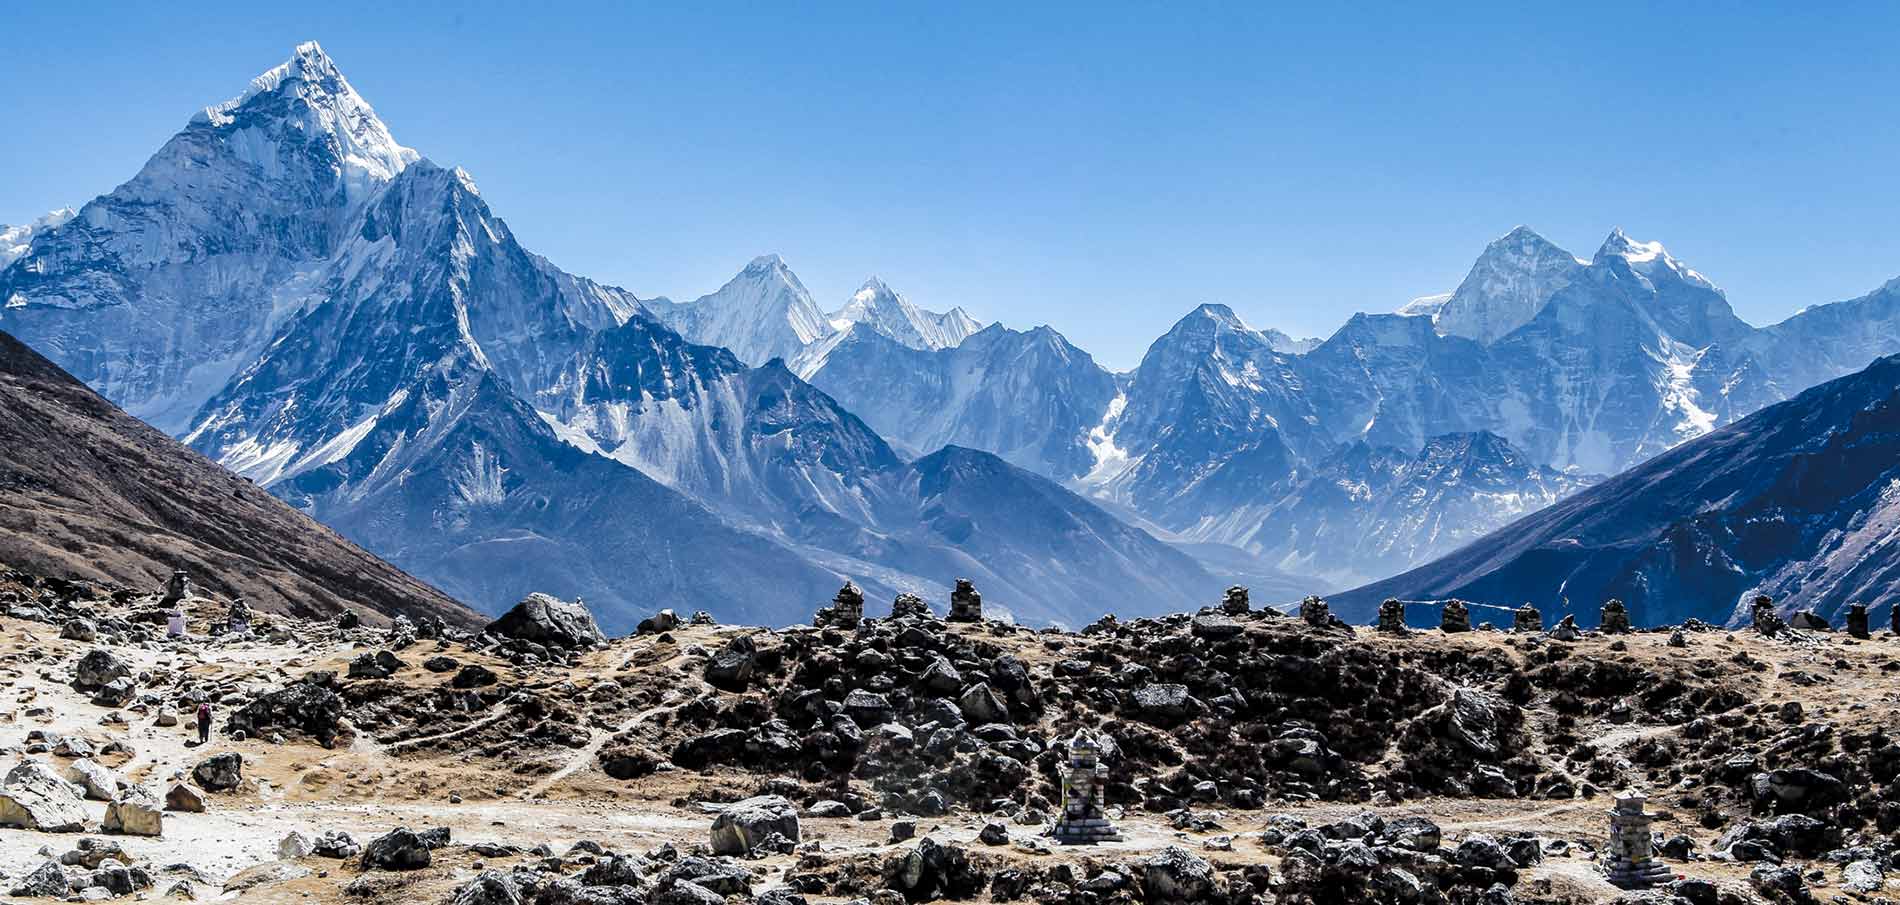 Bí ẩn về cấu trúc rỗng và kho báu bí ẩn bên trong dãy Himalaya - Ảnh 1.